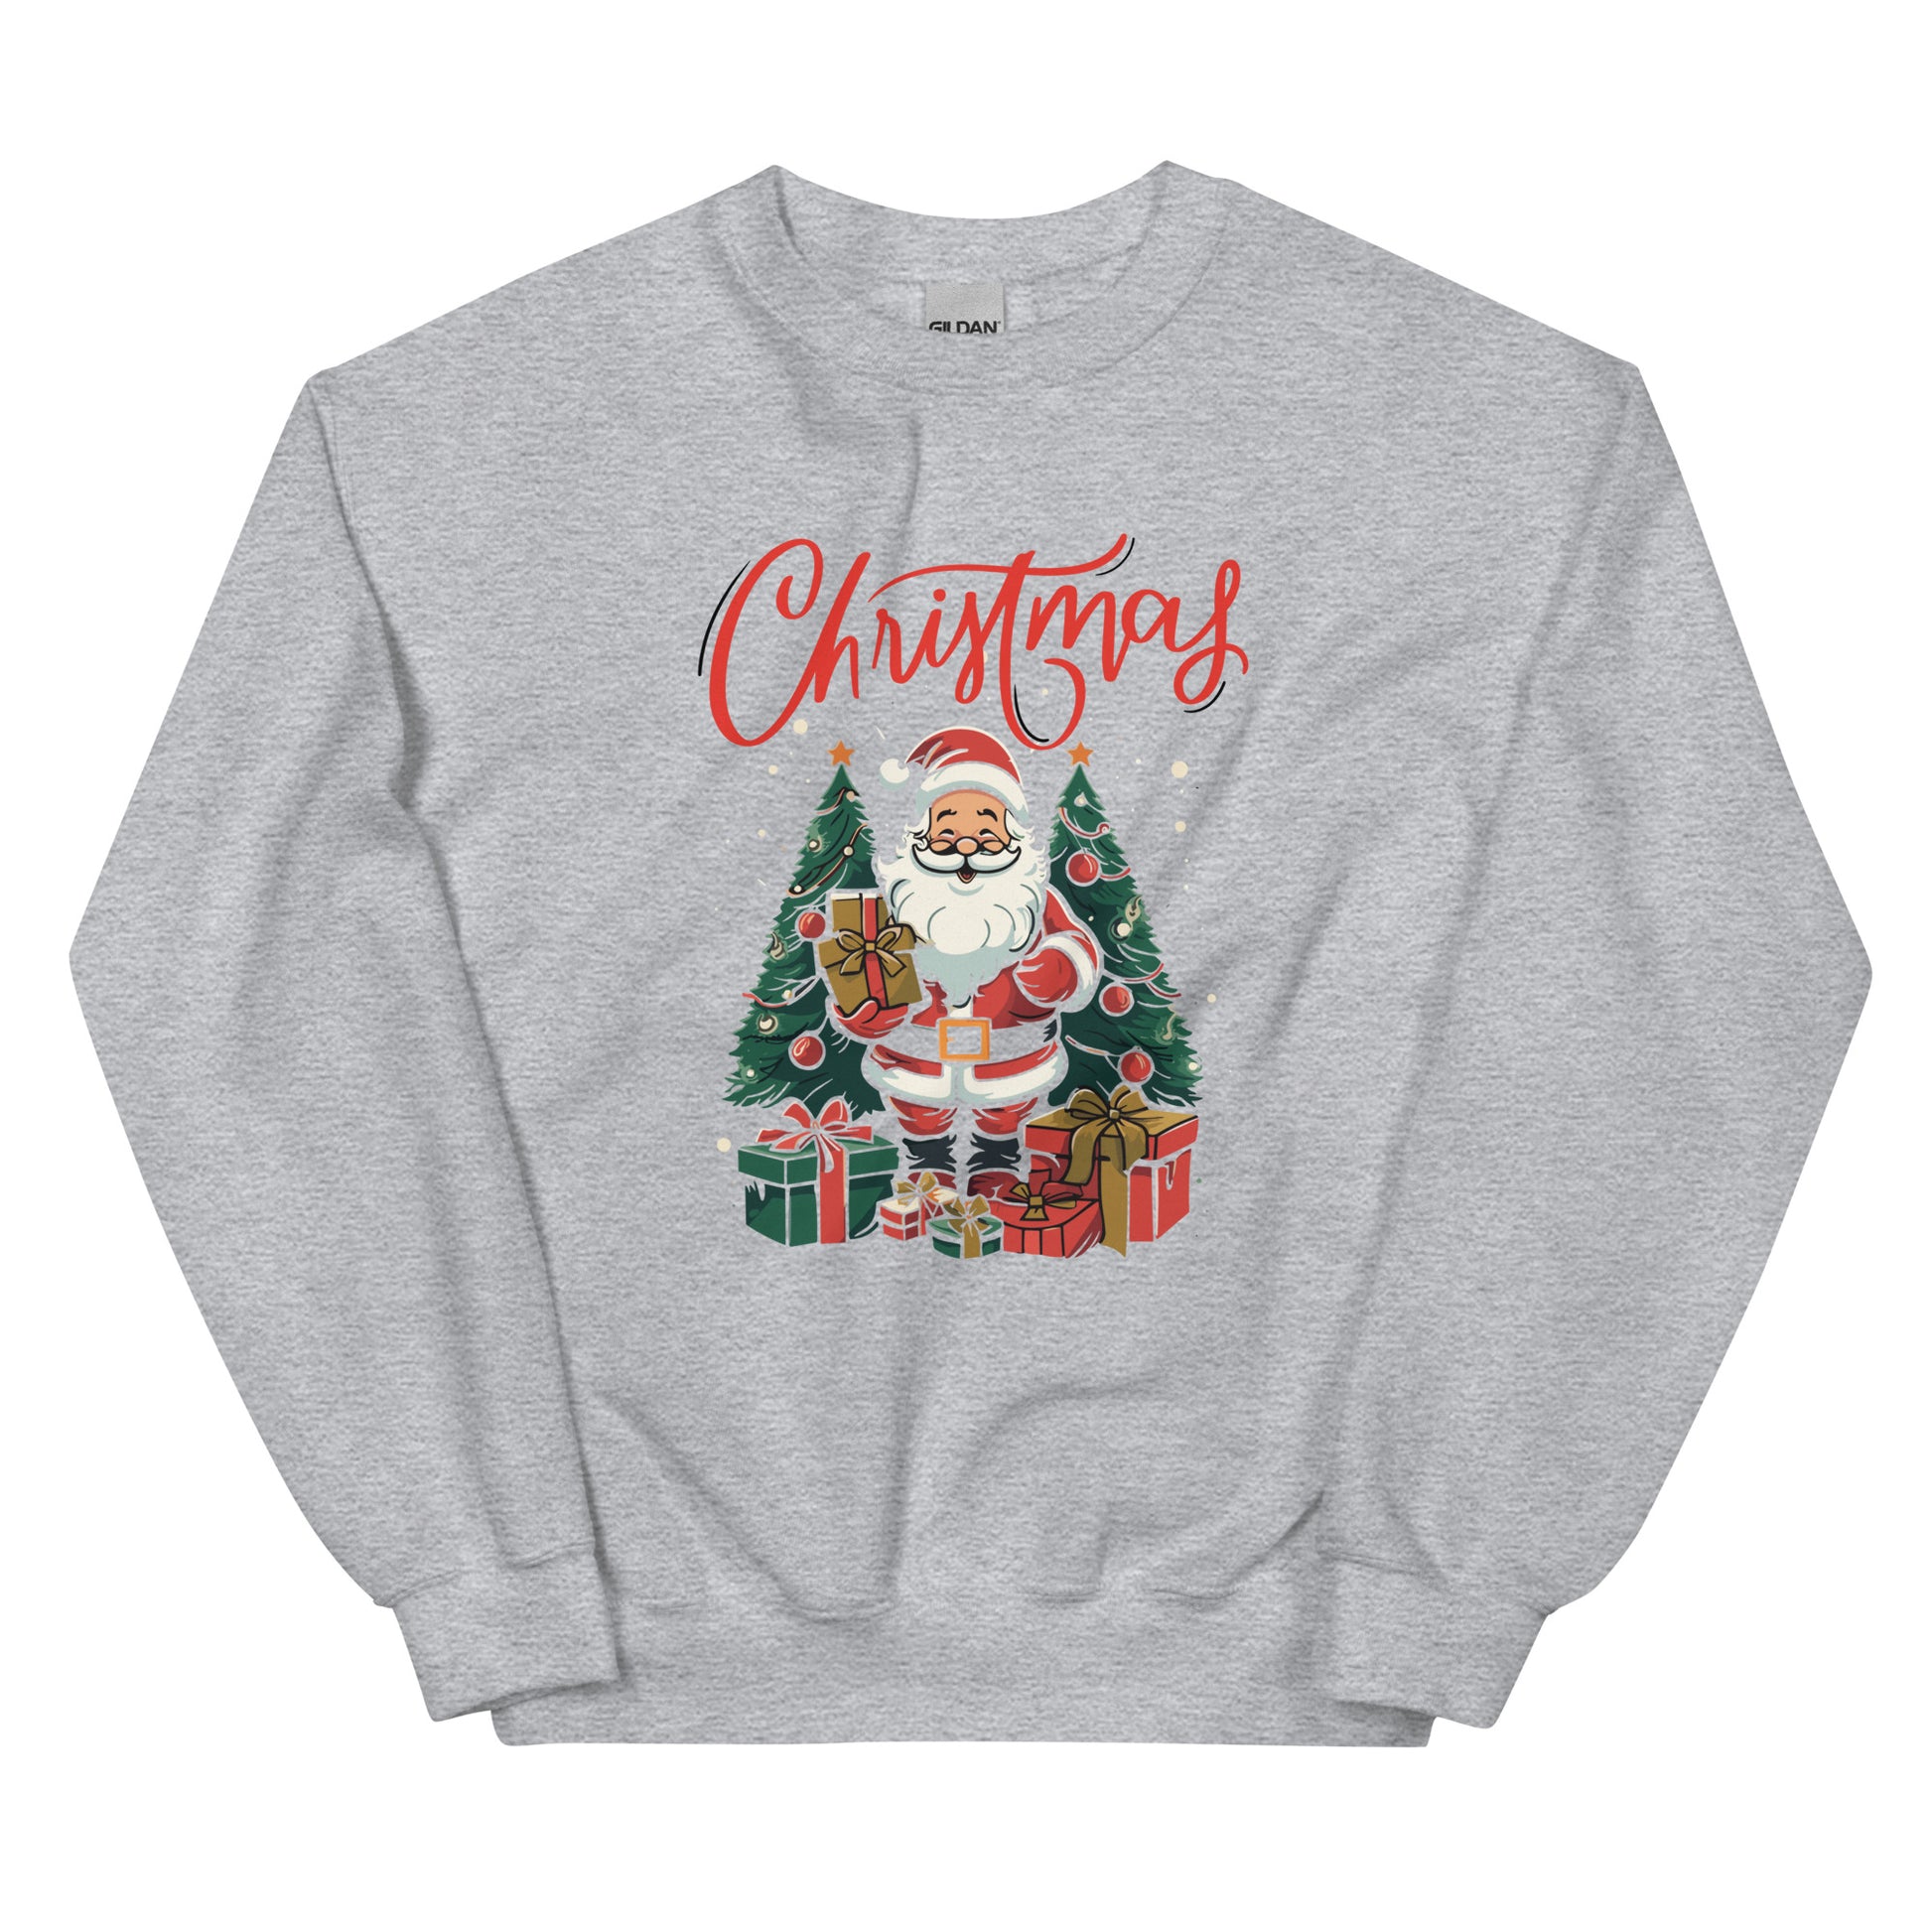 Christmas Unisex Sweatshirt - Cozy Comfort for Festive Celebrations | Joyful Holidays, Warmth, and Stylish Elegance